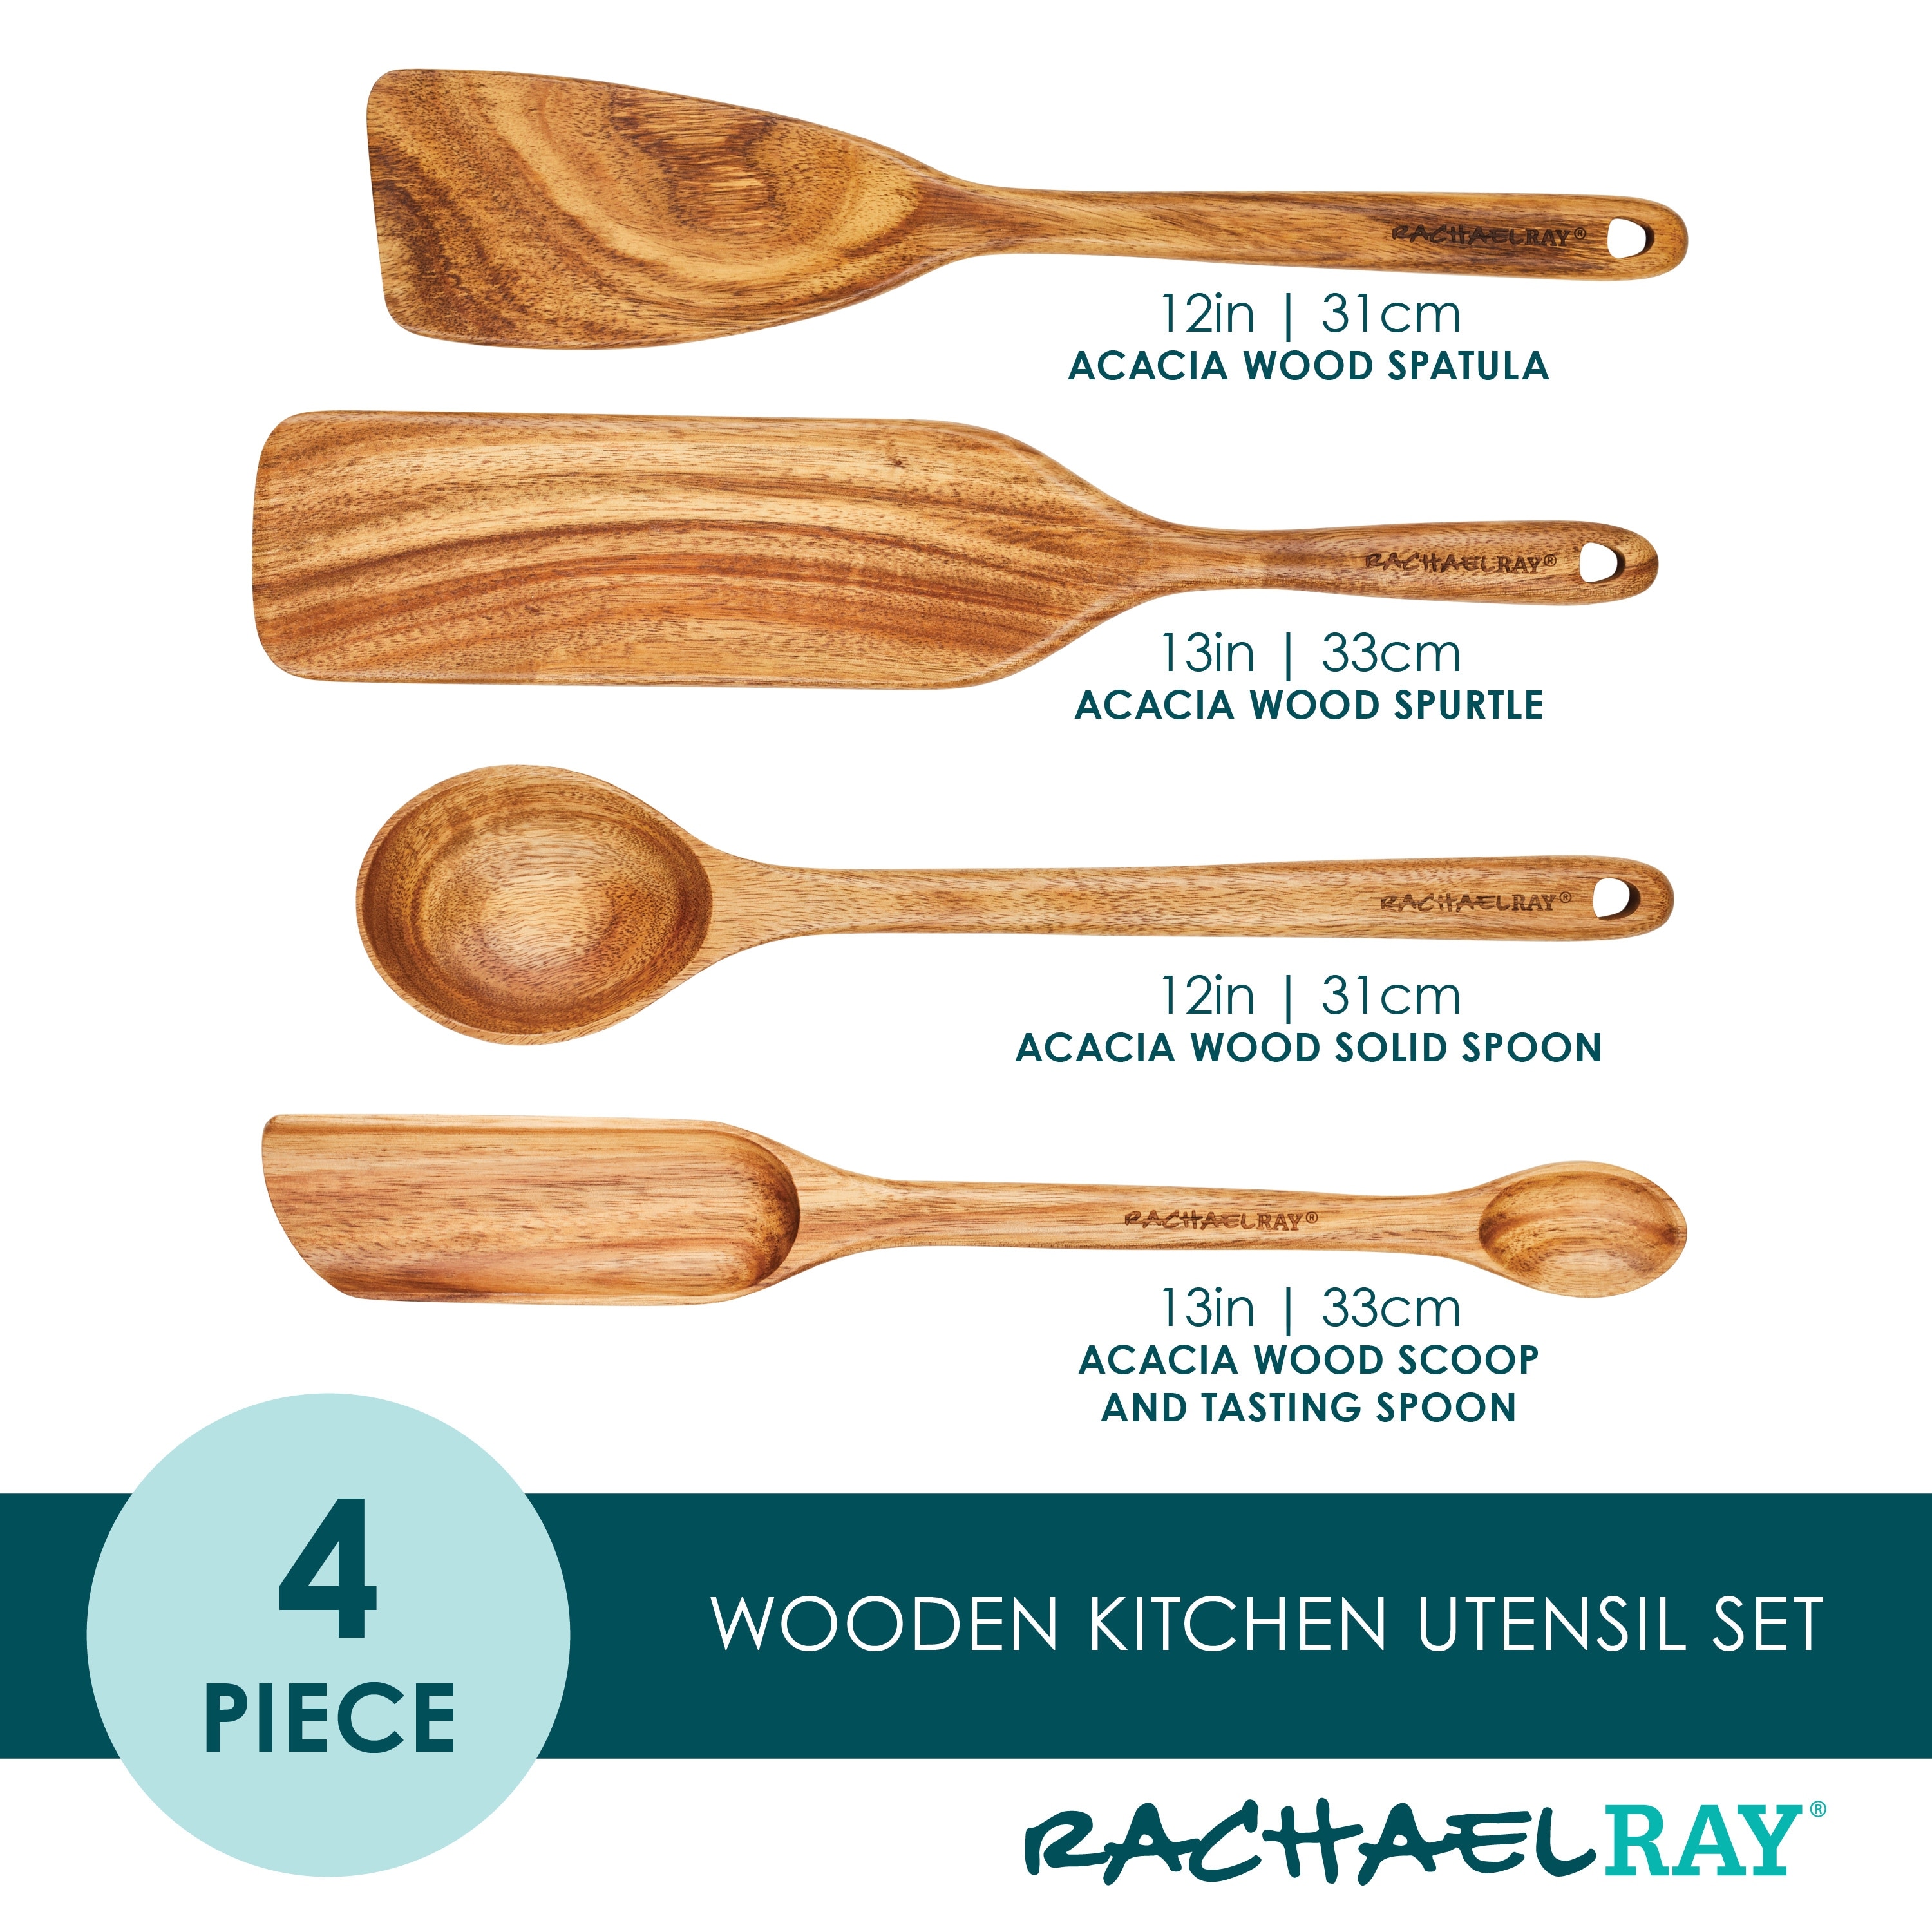 3 Piece Wooden Kitchen Utensils Set